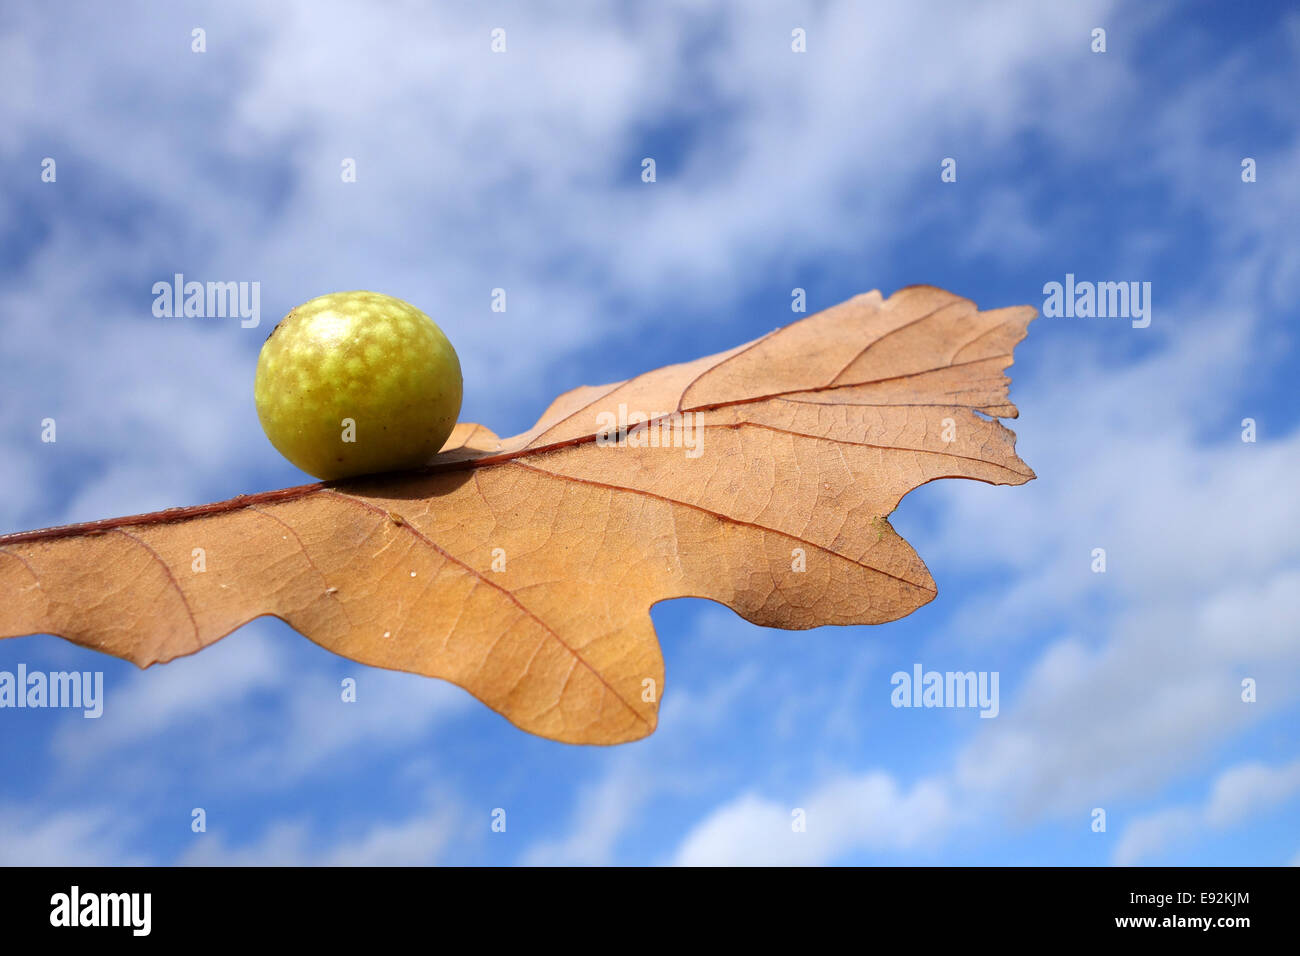 Oak apple on tree leaf against blue sky Stock Photo